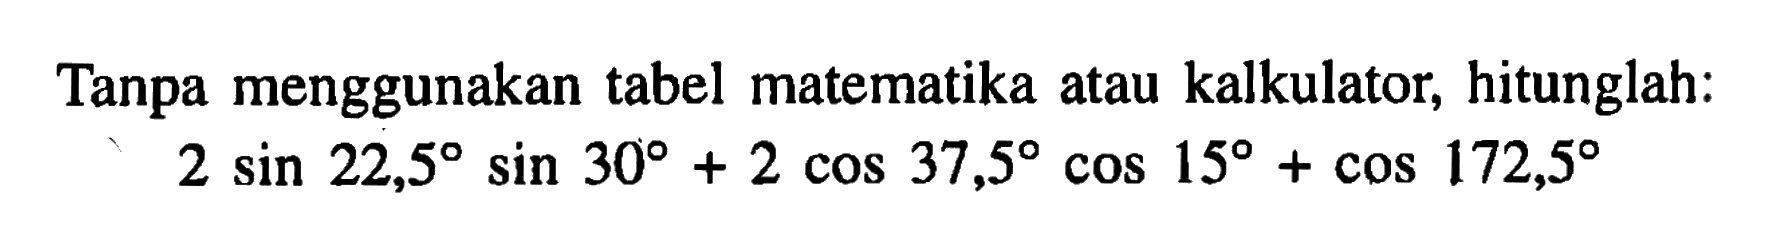 Tanpa menggunakan tabel matematika atau kalkulator, hitunglah: 2 sin 22,5 sin 30 + 2 cos 37,5 cos 15 + cos 172,5